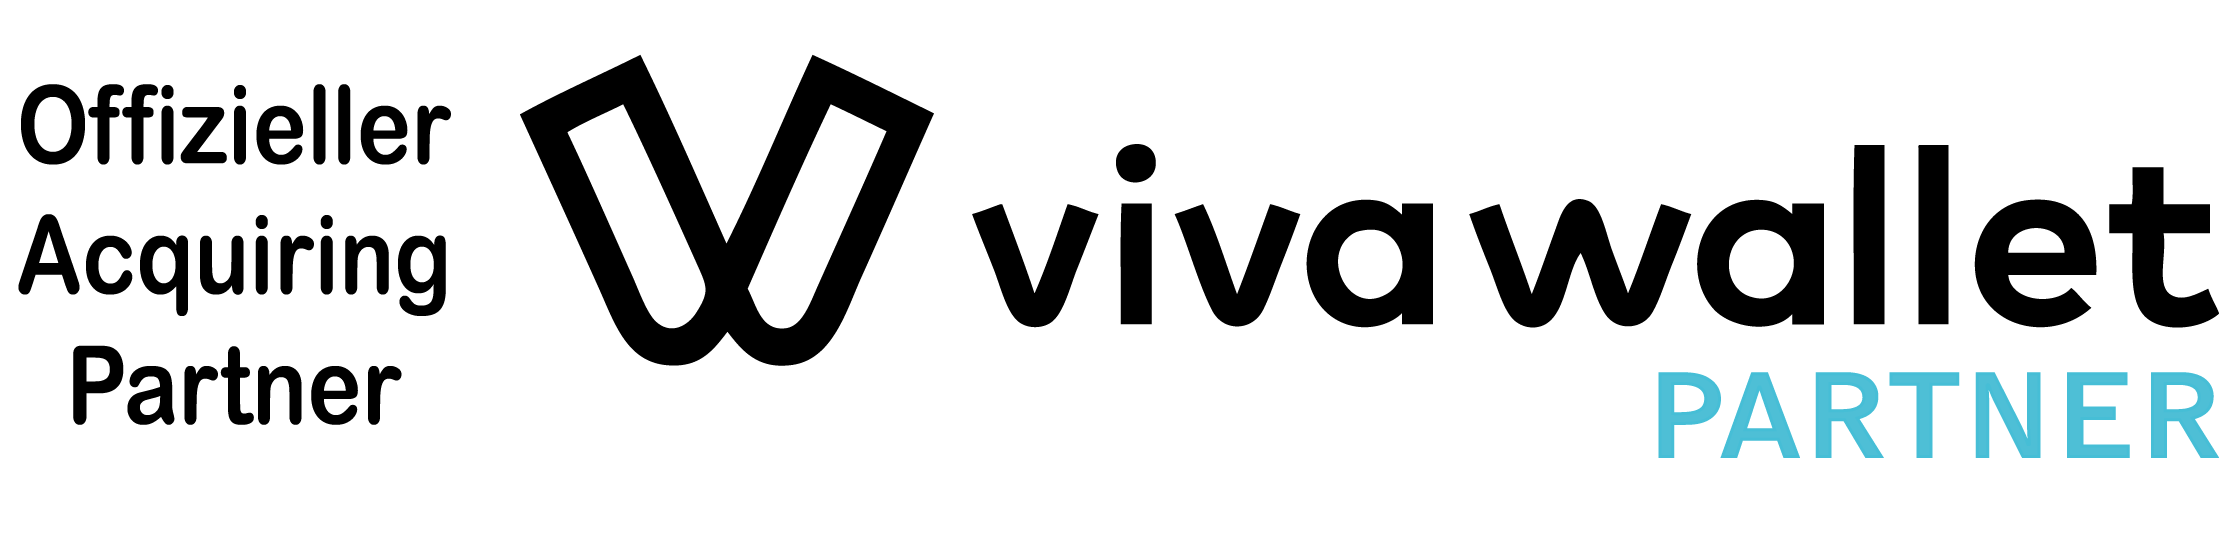 Viva Wallet Partner CiN GmbH